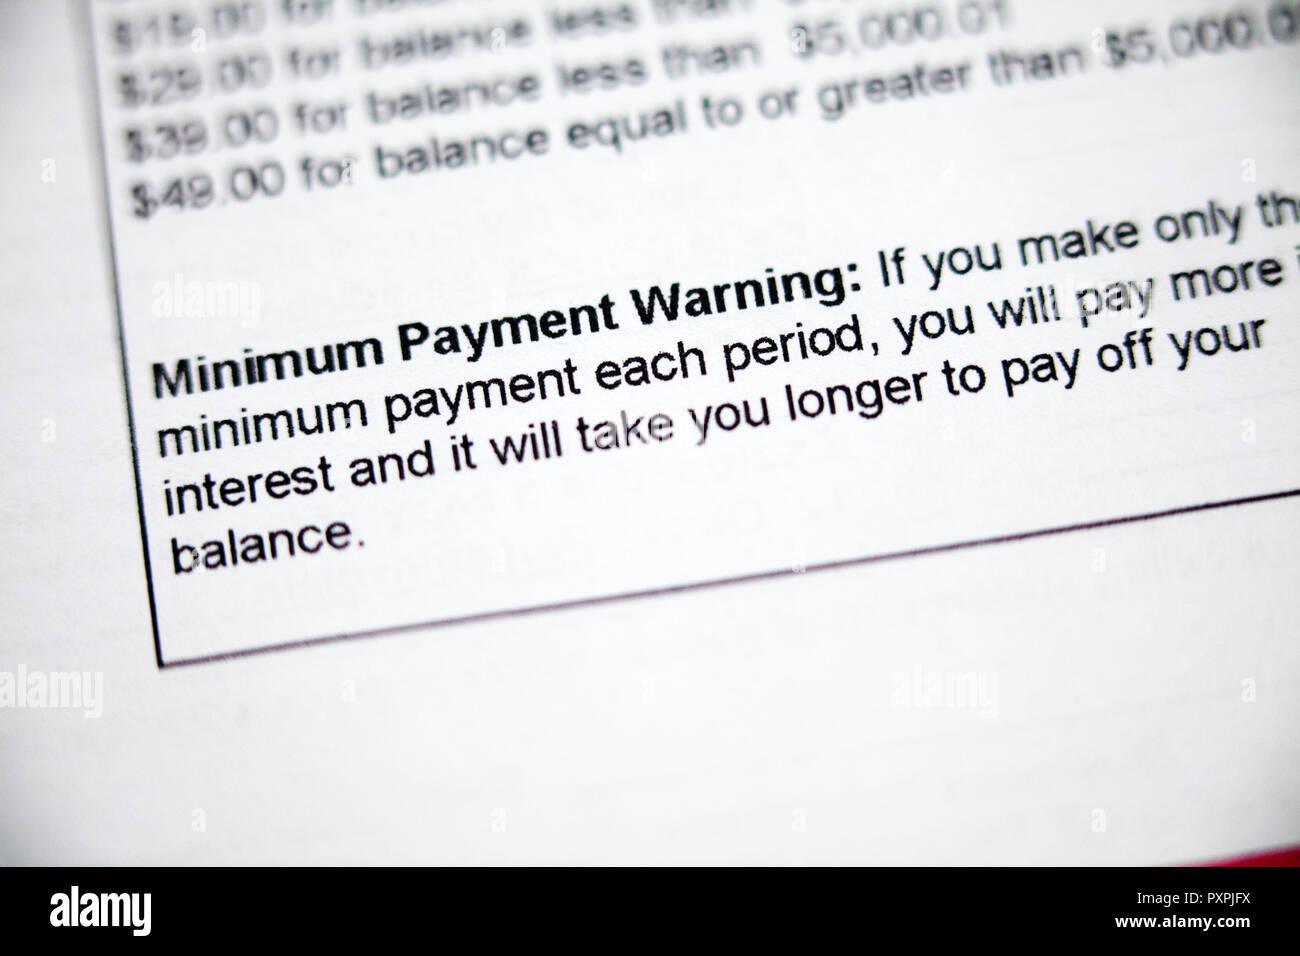 Mindestbetrag der Zahlung Warnung auf der Kreditkartenabrechnung - USA Stockfoto